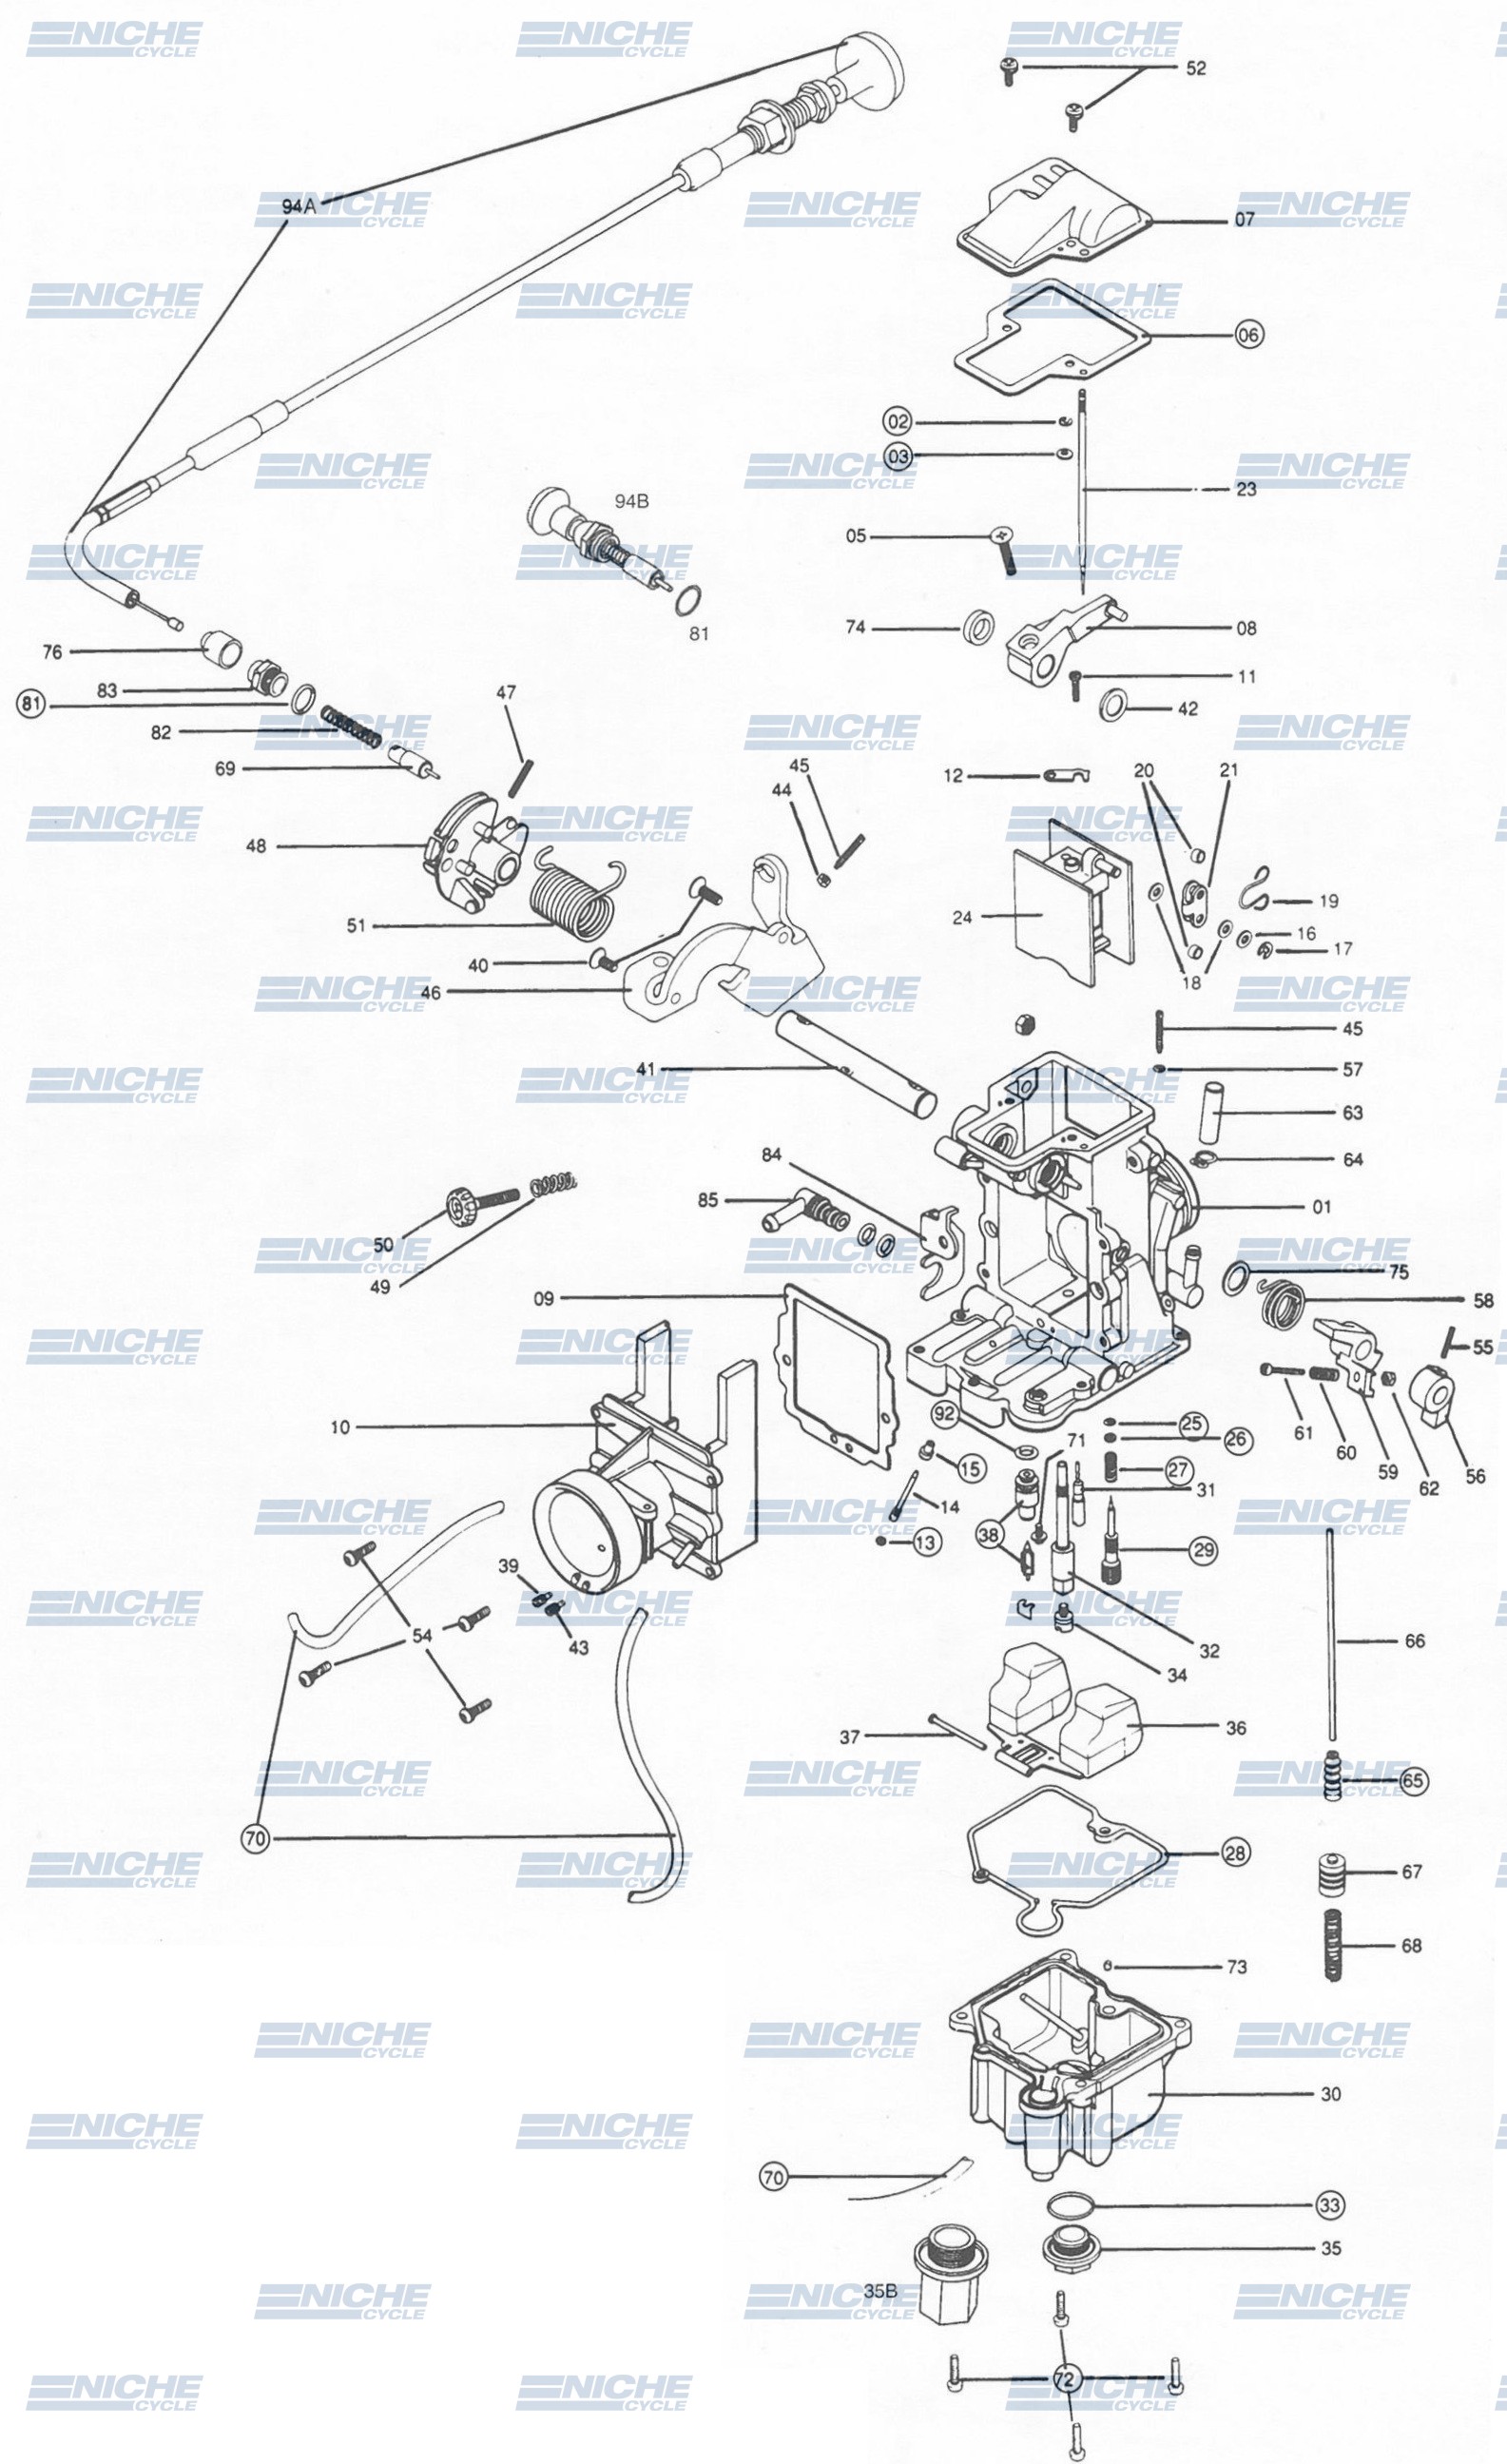 Mikuni TM40-6 Exploded View - Replacement Parts Listing TM40-6_parts_list